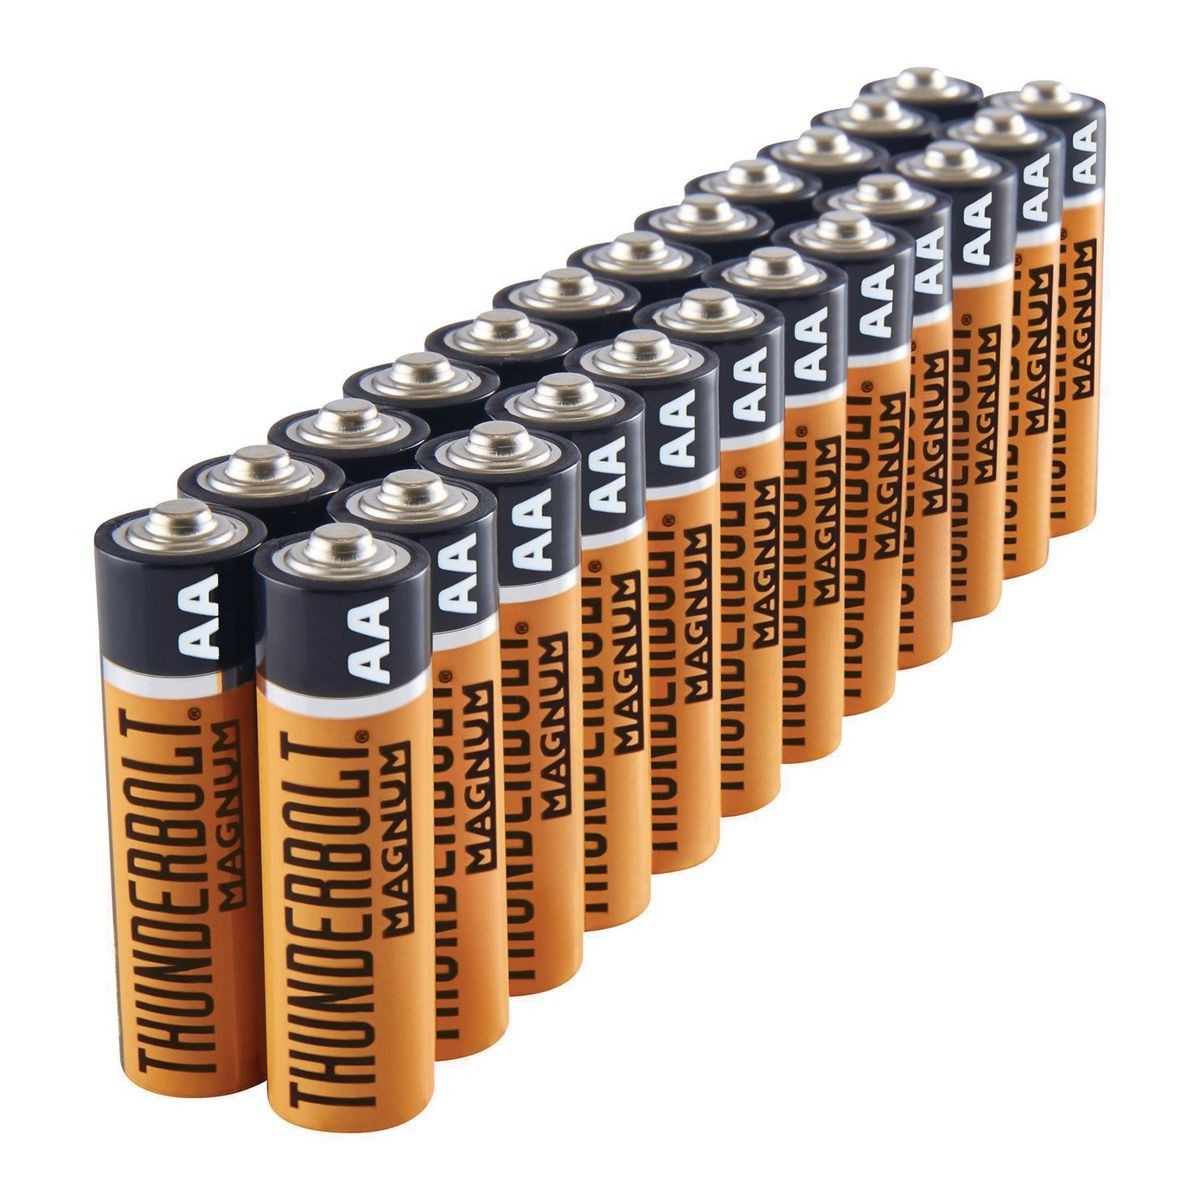 Batterietypen und Überlegungen